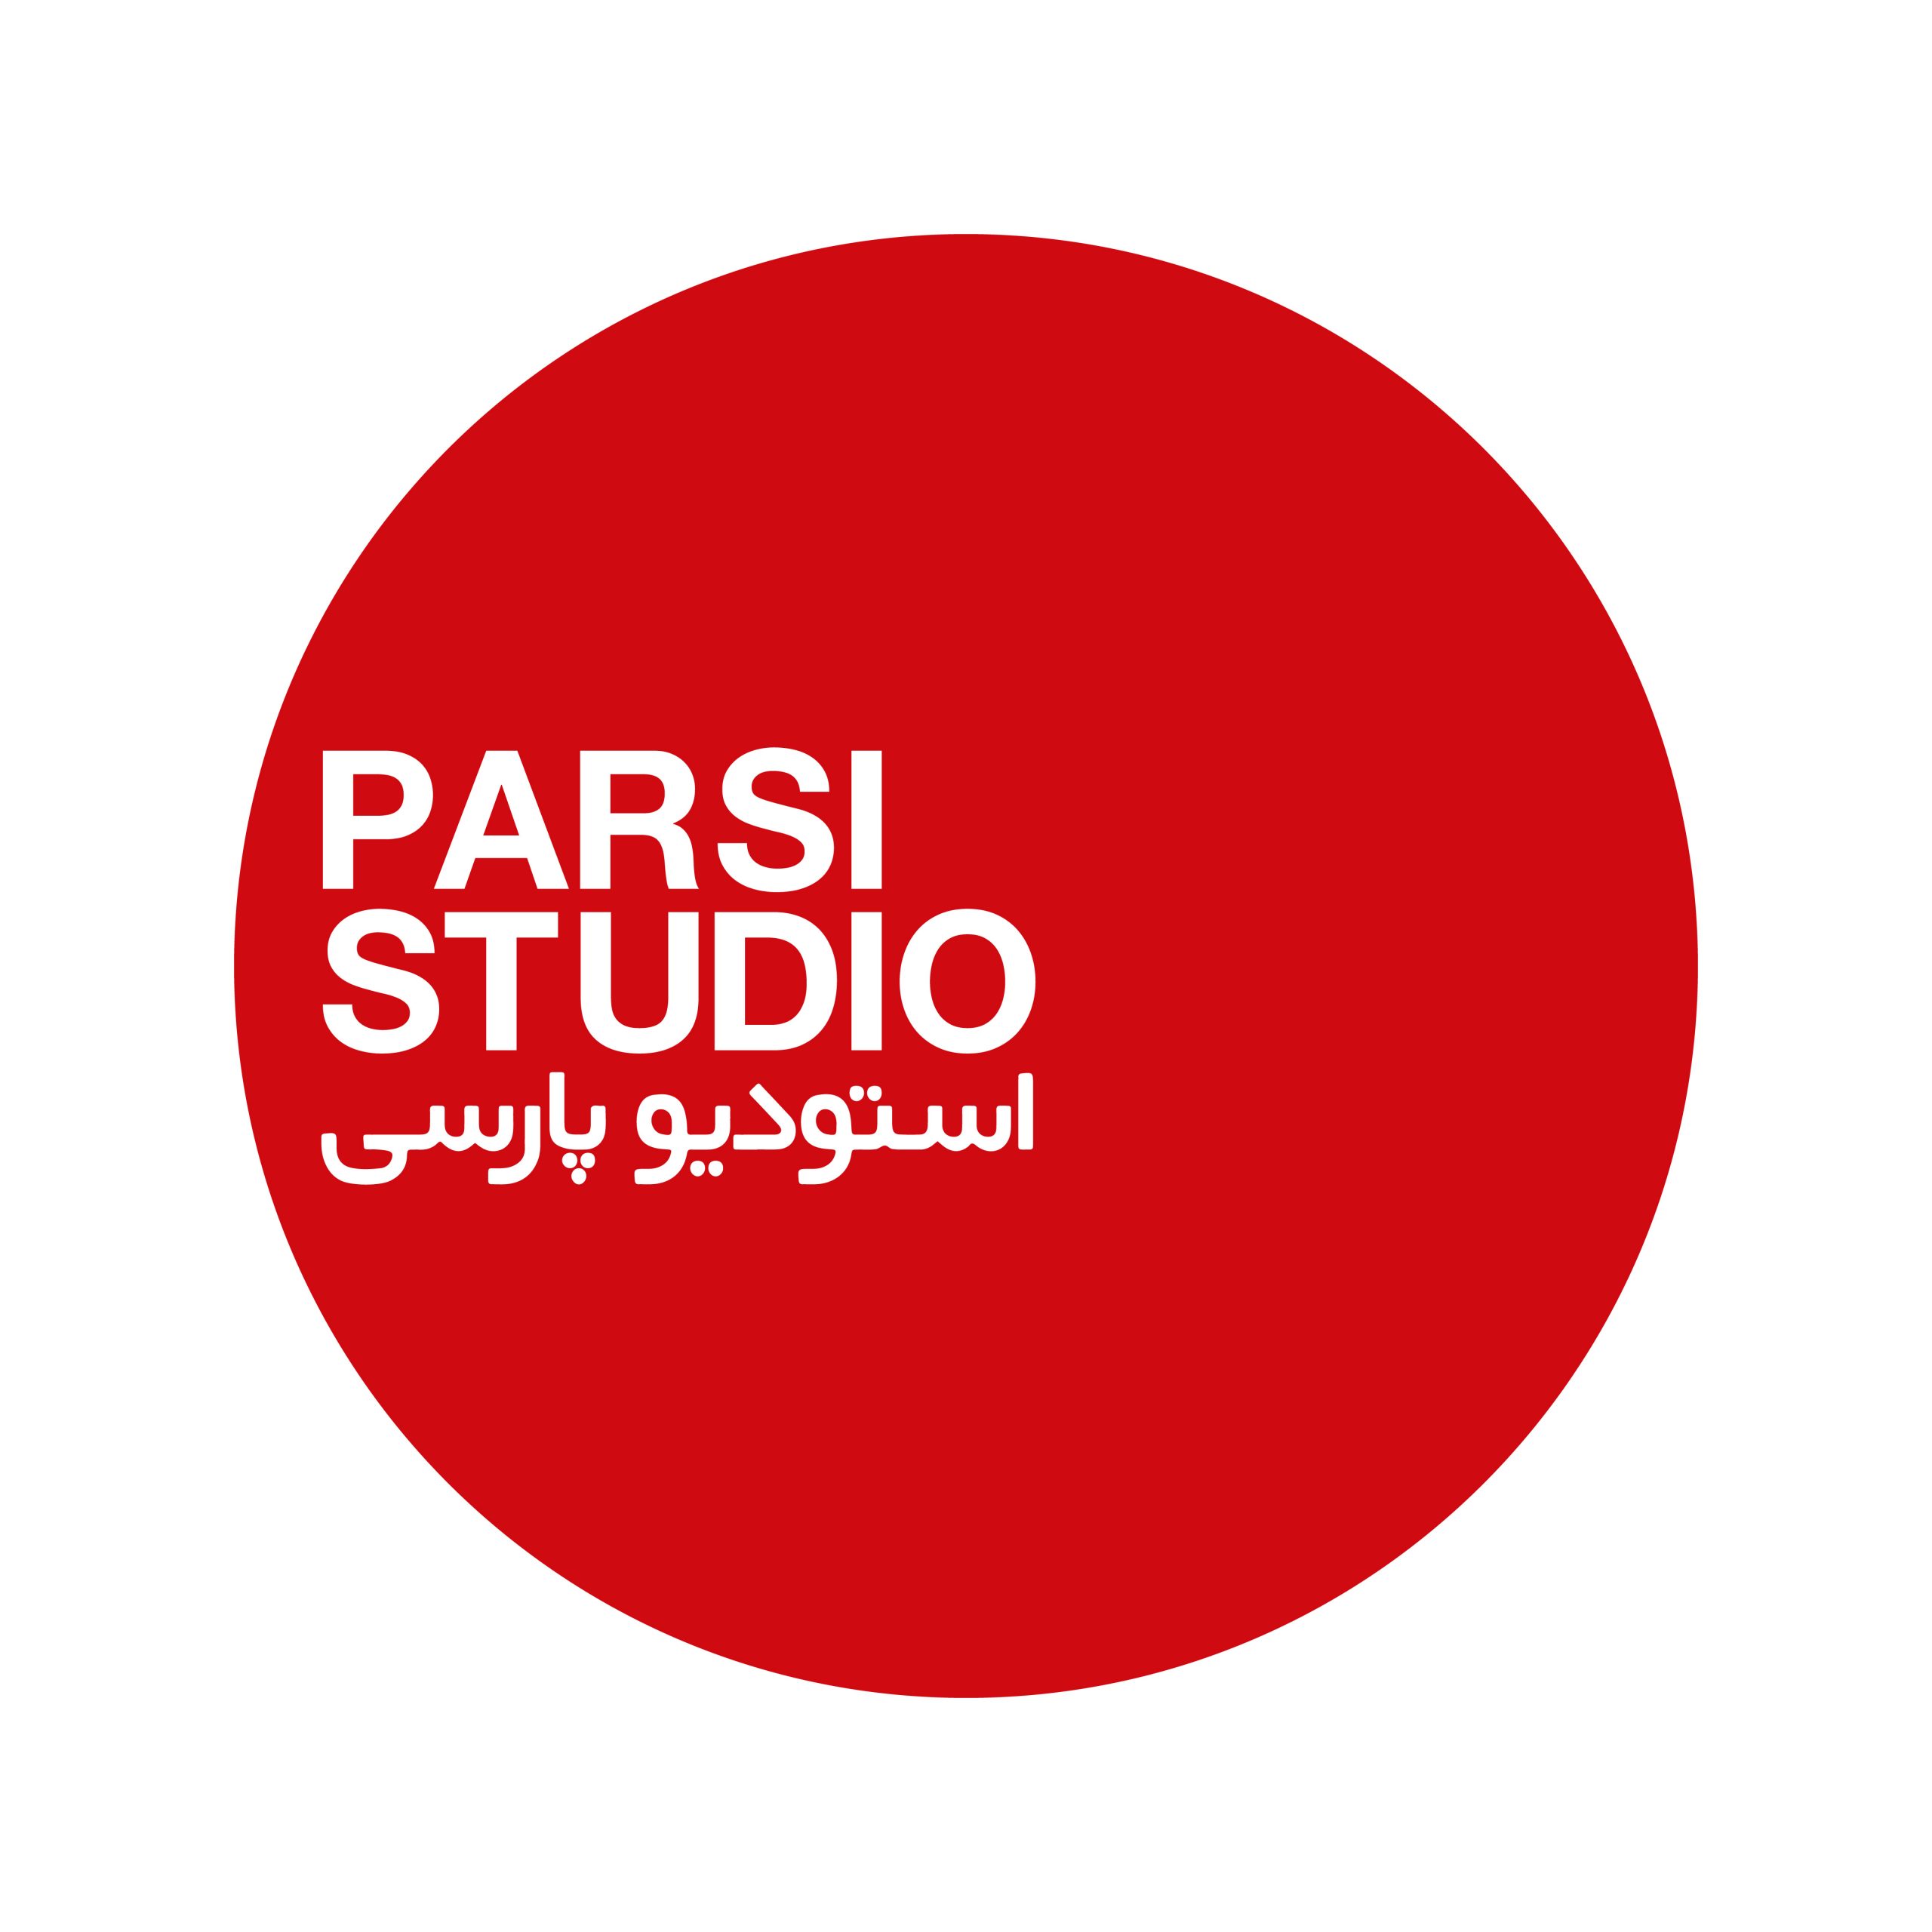 استودیو پارسی